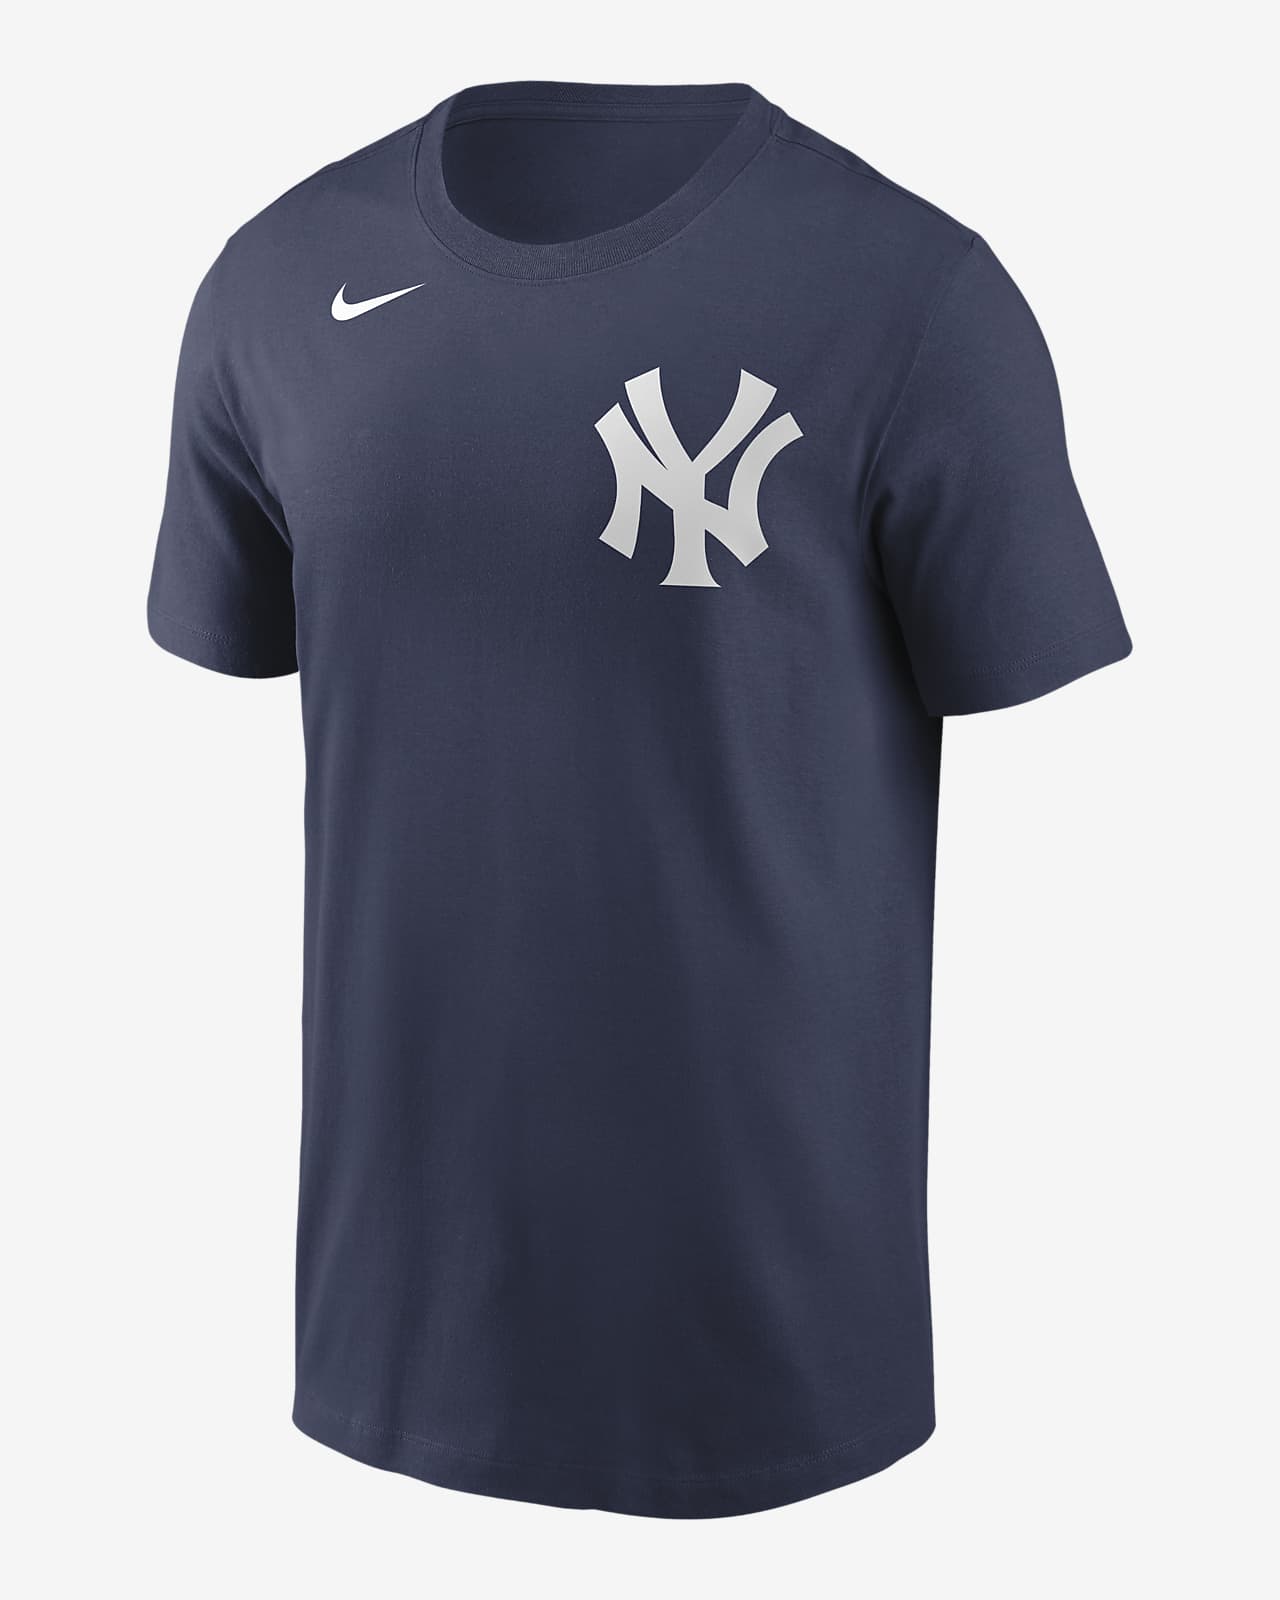 MLB New York Yankees (Gleyber Torres) Men's T-Shirt